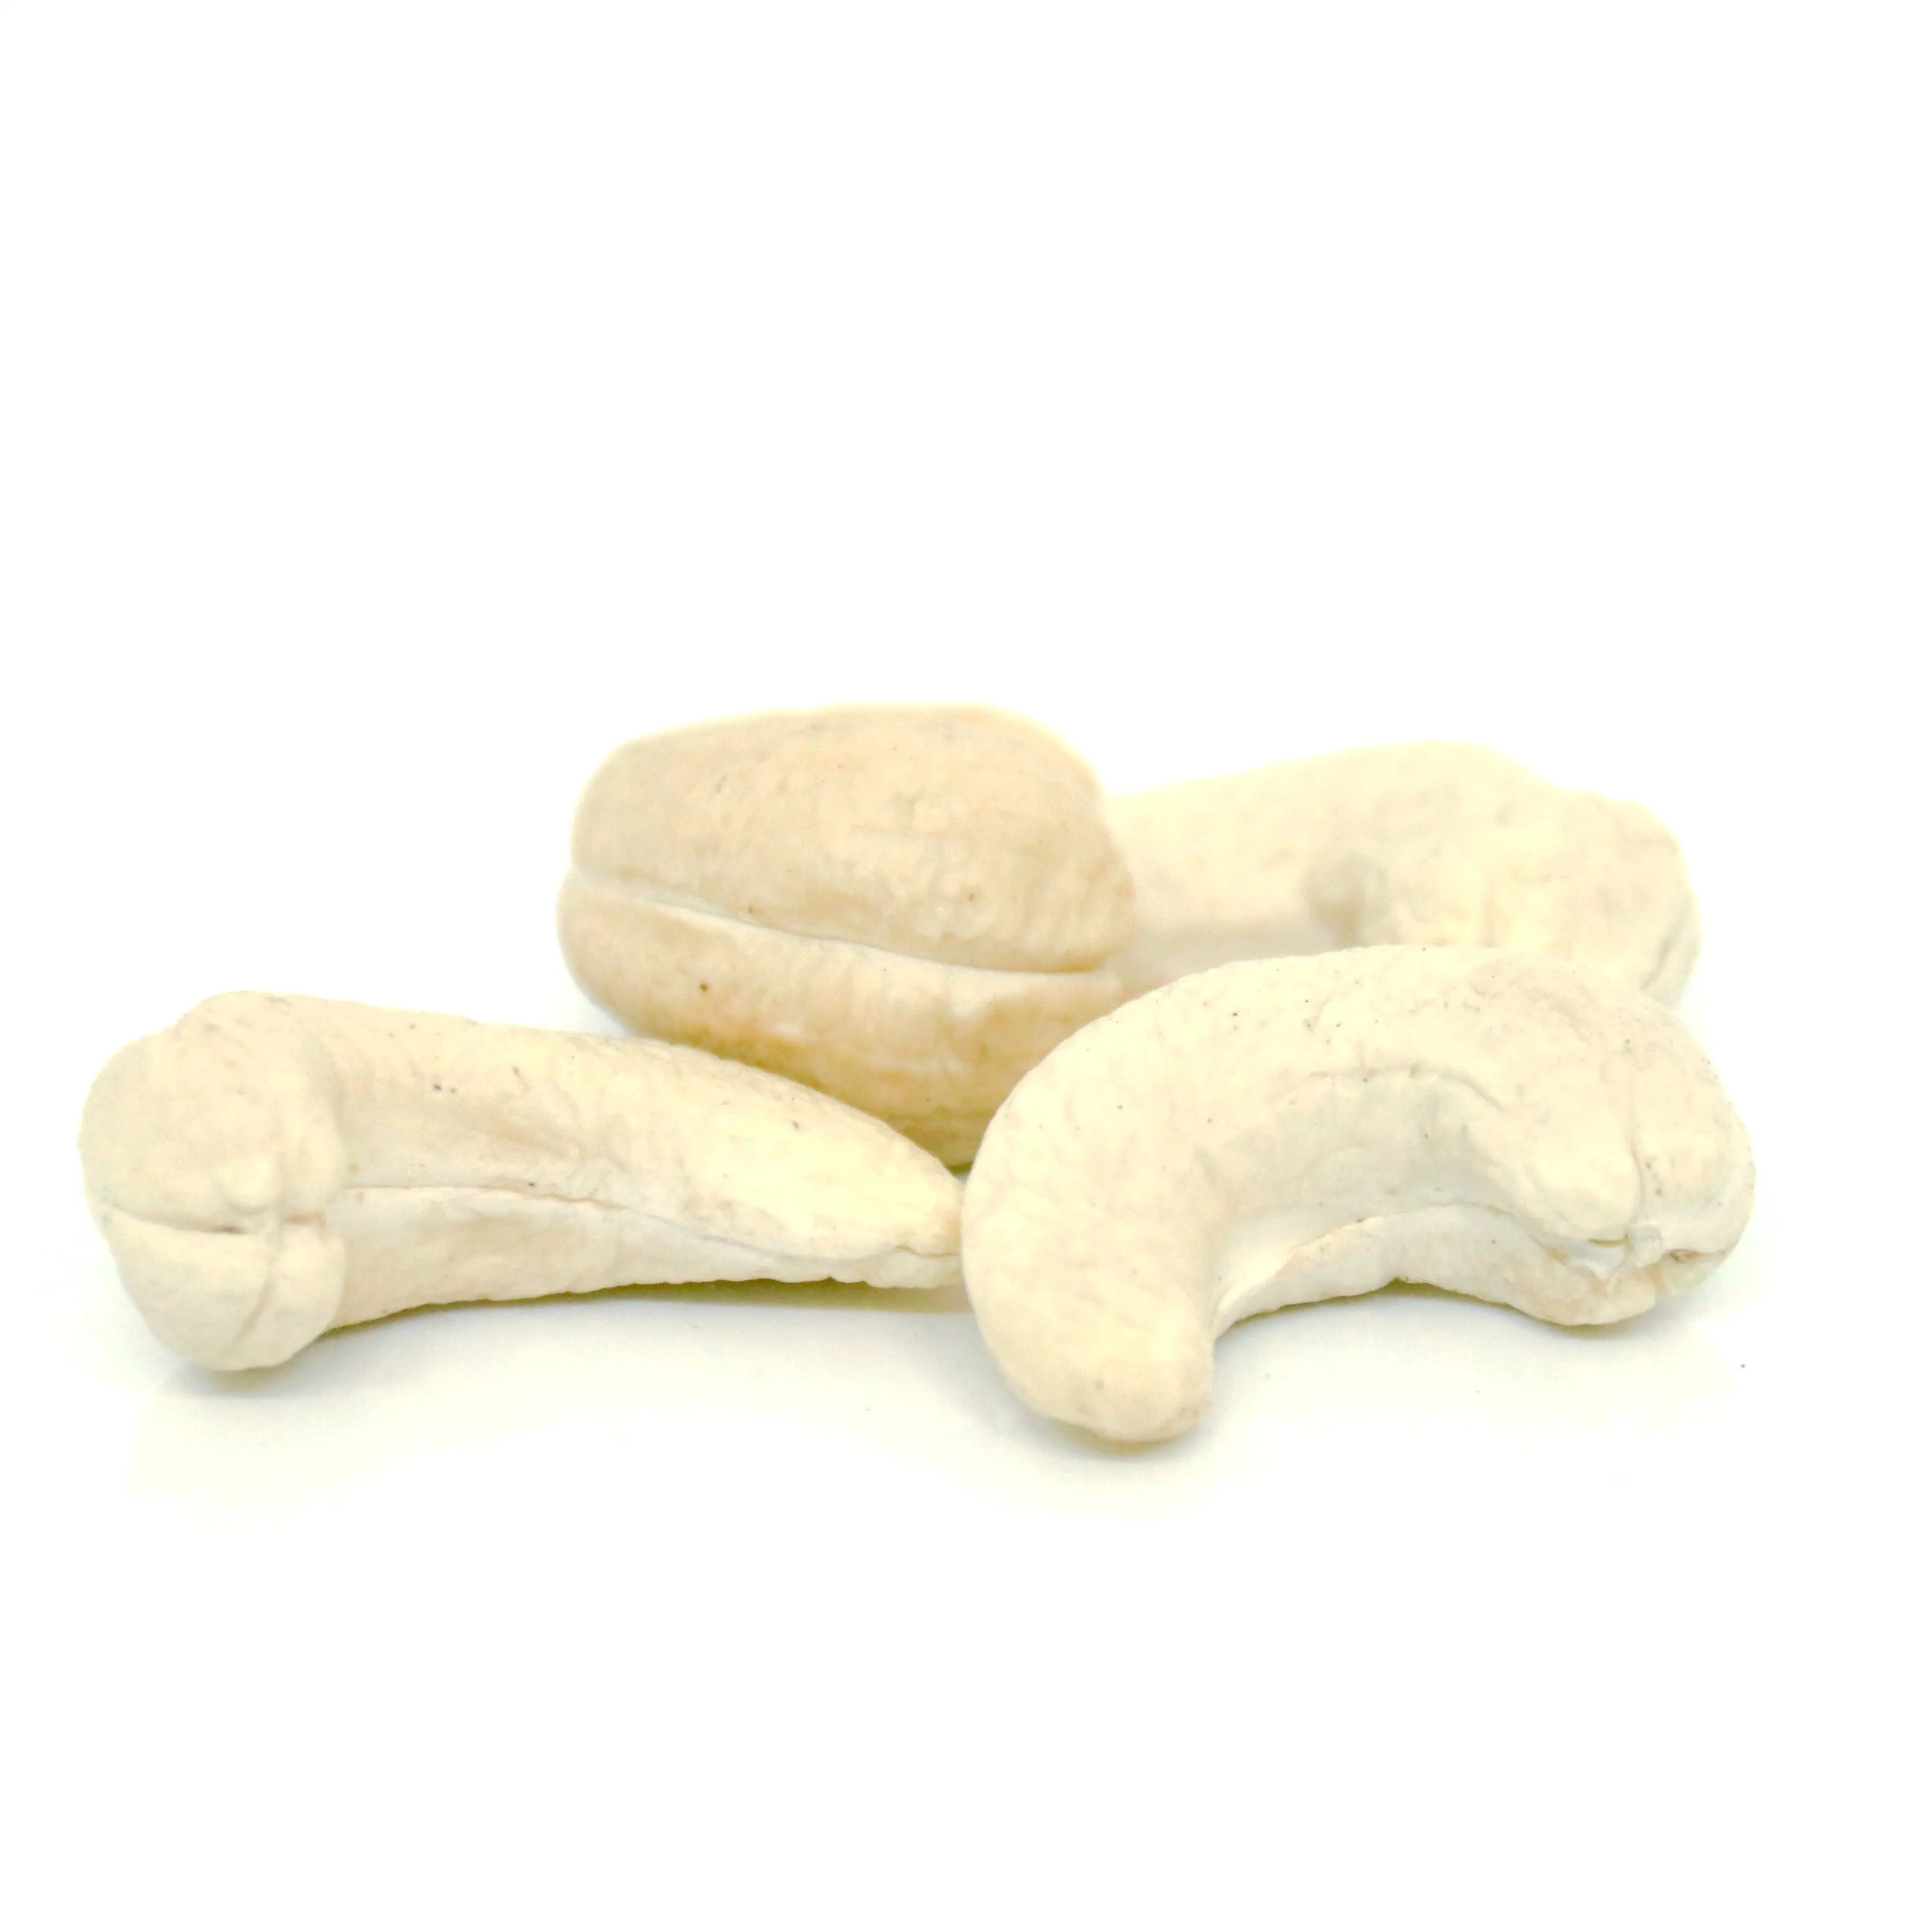 
Asian WW320 Dried CashewNut/ Cashew Nuts W180 W240 W320 W450/ Vietnam Certified 